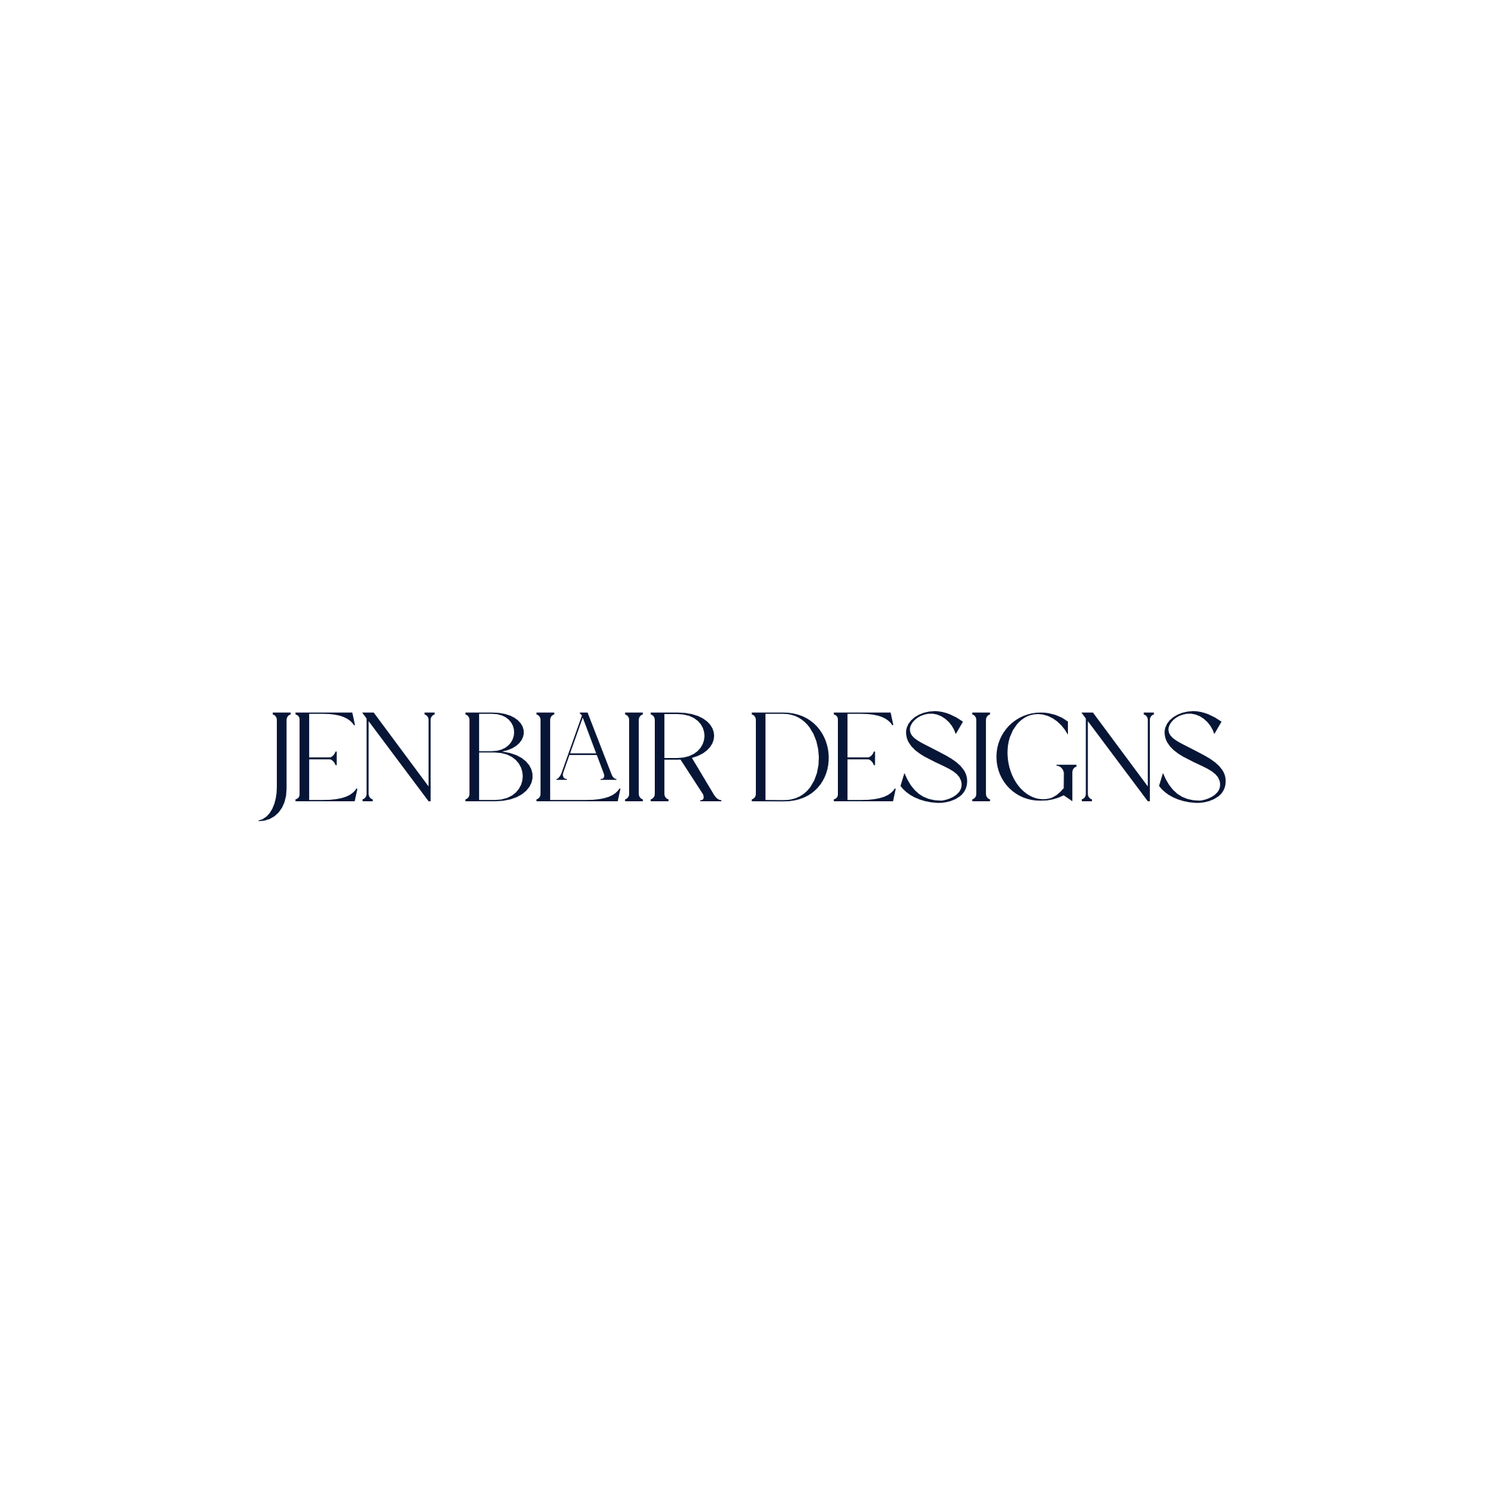 Jen Blair Designs